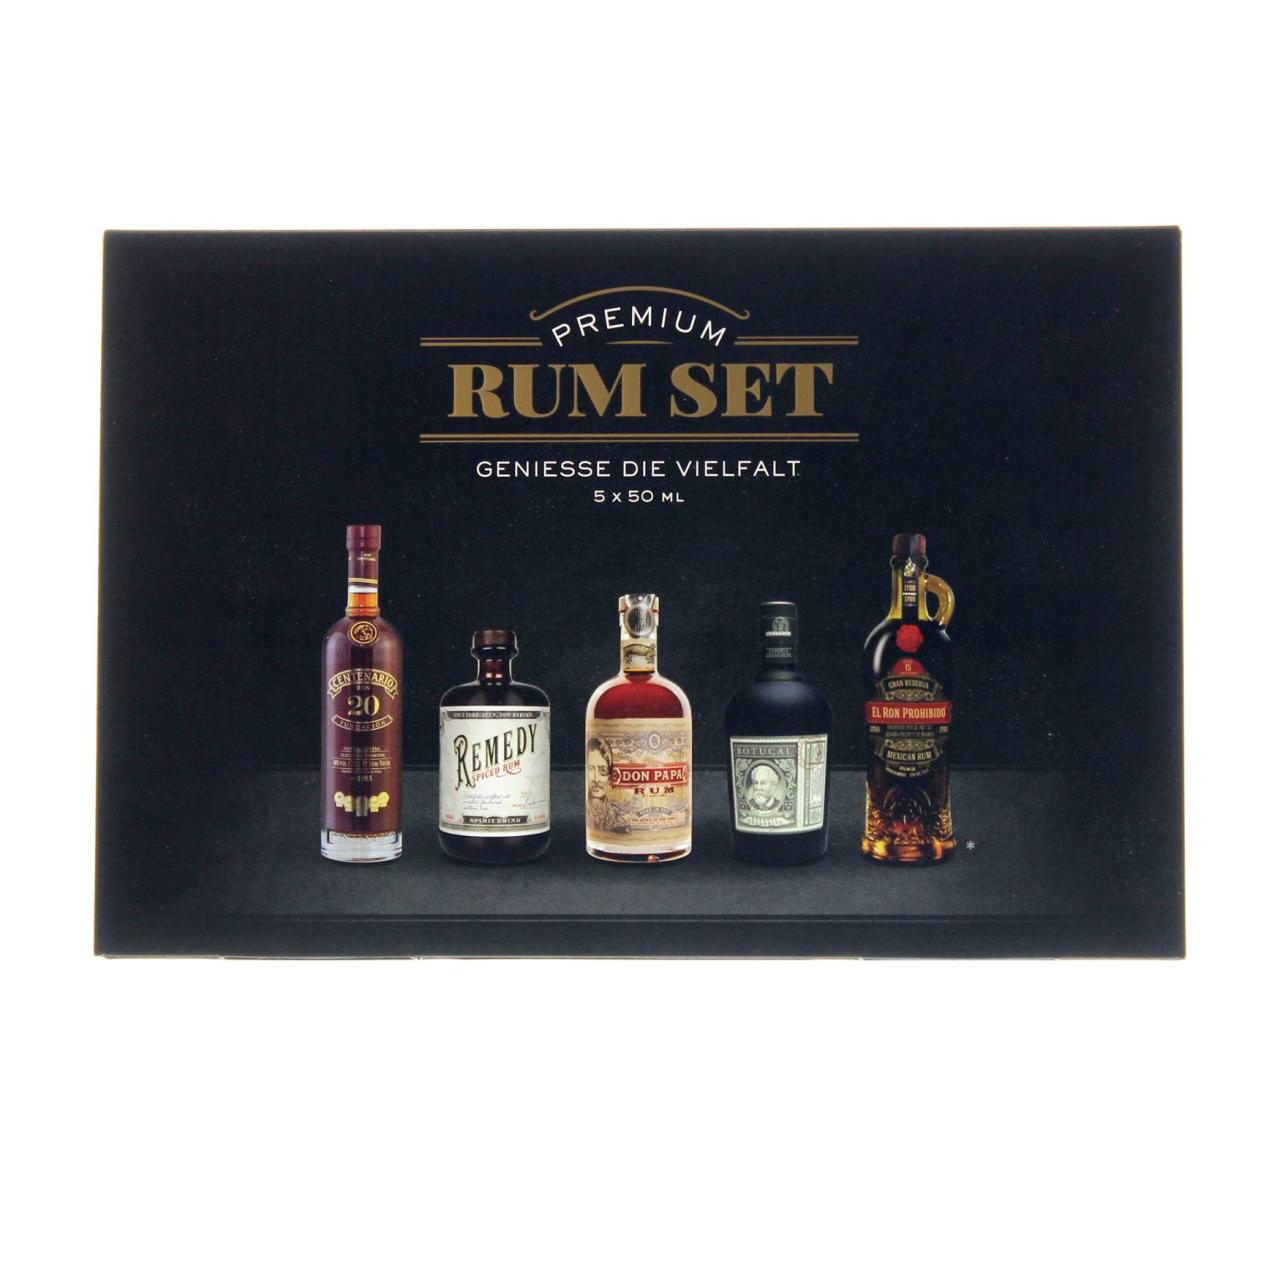 Premium Rum-Set 40,3% 5x50ml